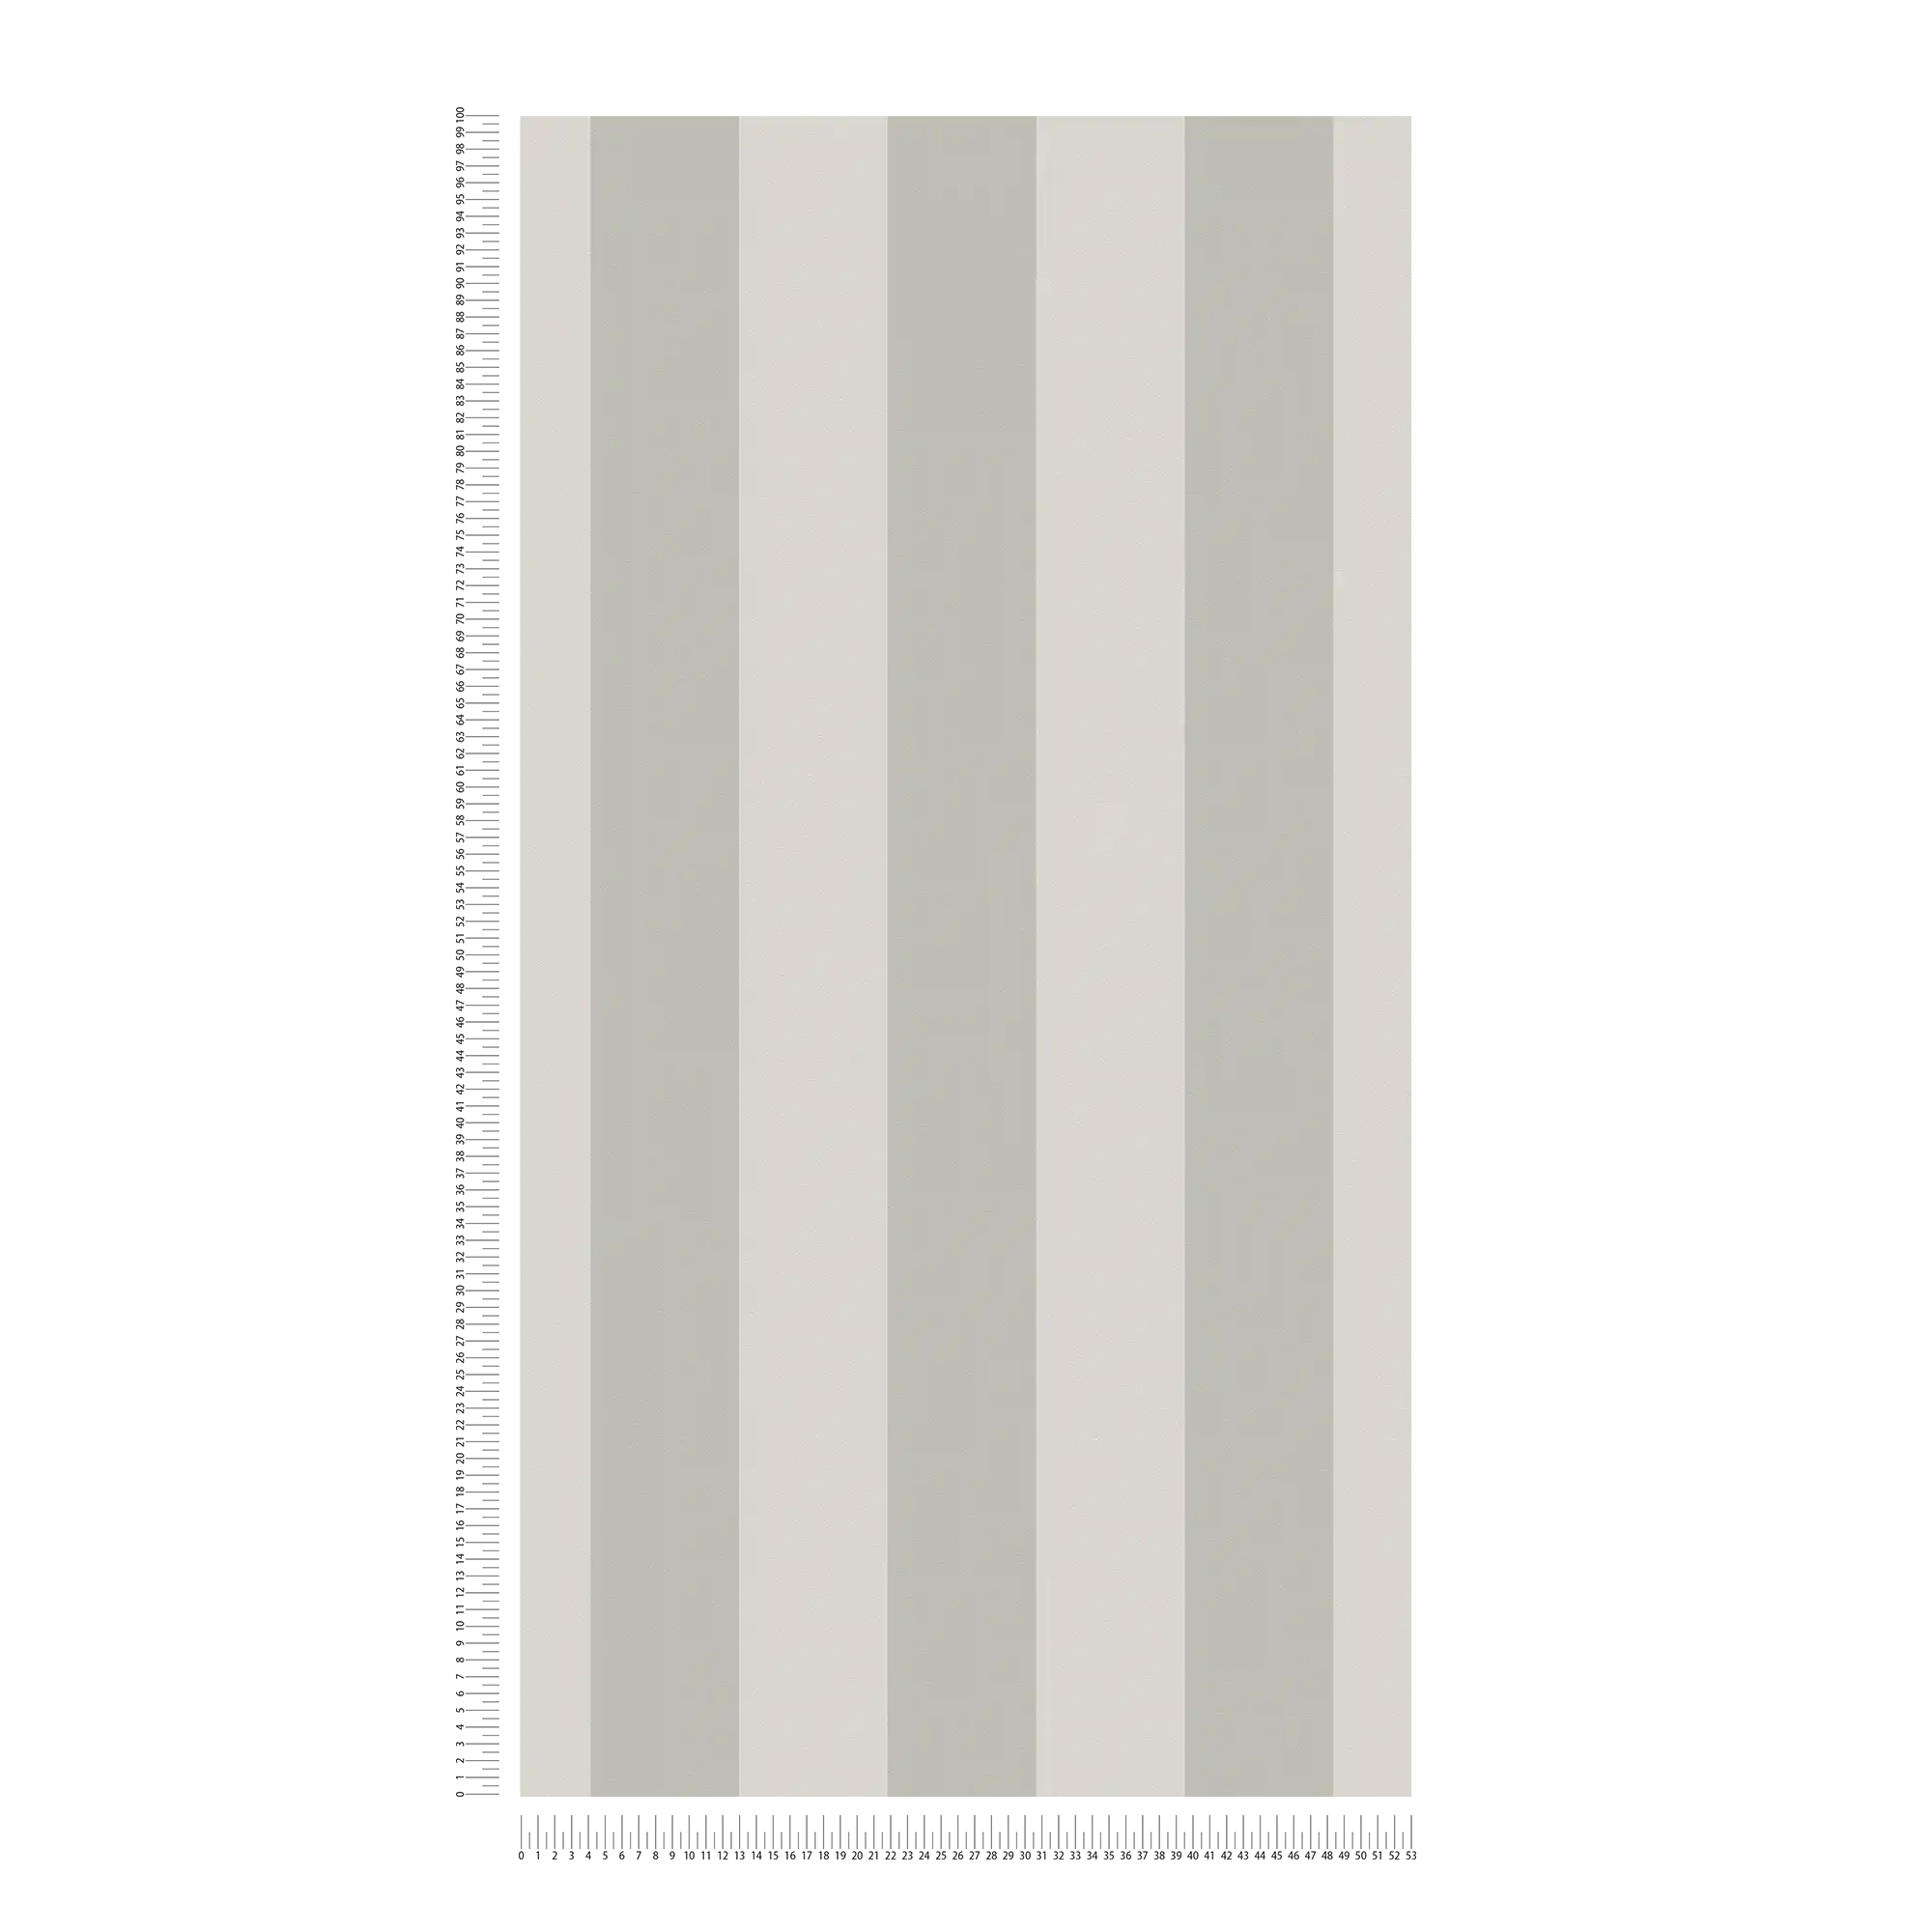             Carta da parati in tessuto non tessuto con strisce a blocchi e struttura leggera - grigio
        